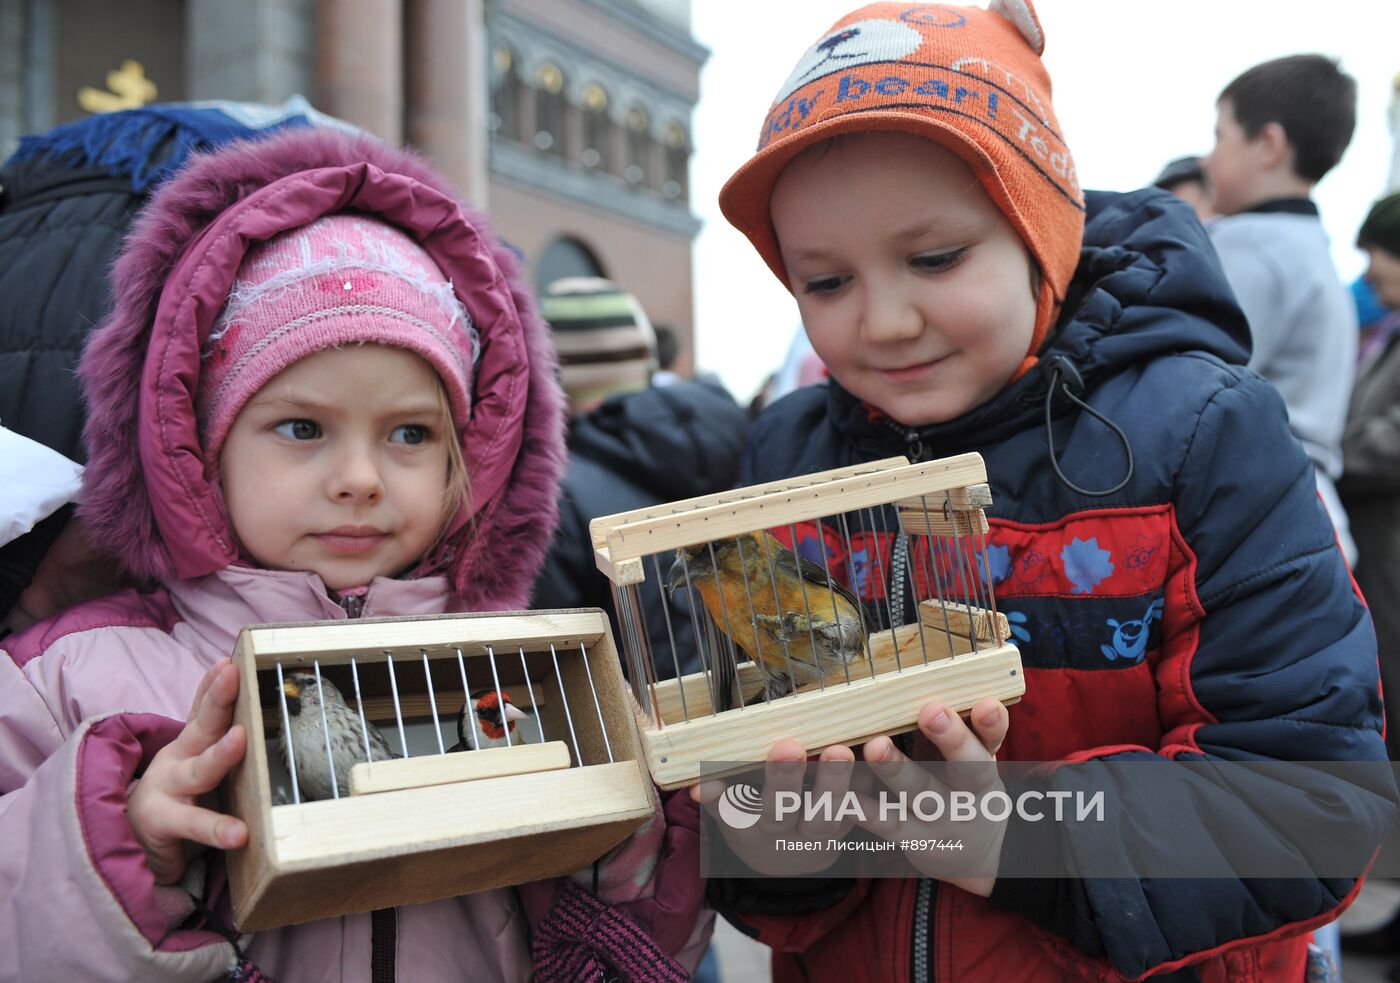 Праздник Благовещение Пресвятой Богородицы в Екатеринбурге